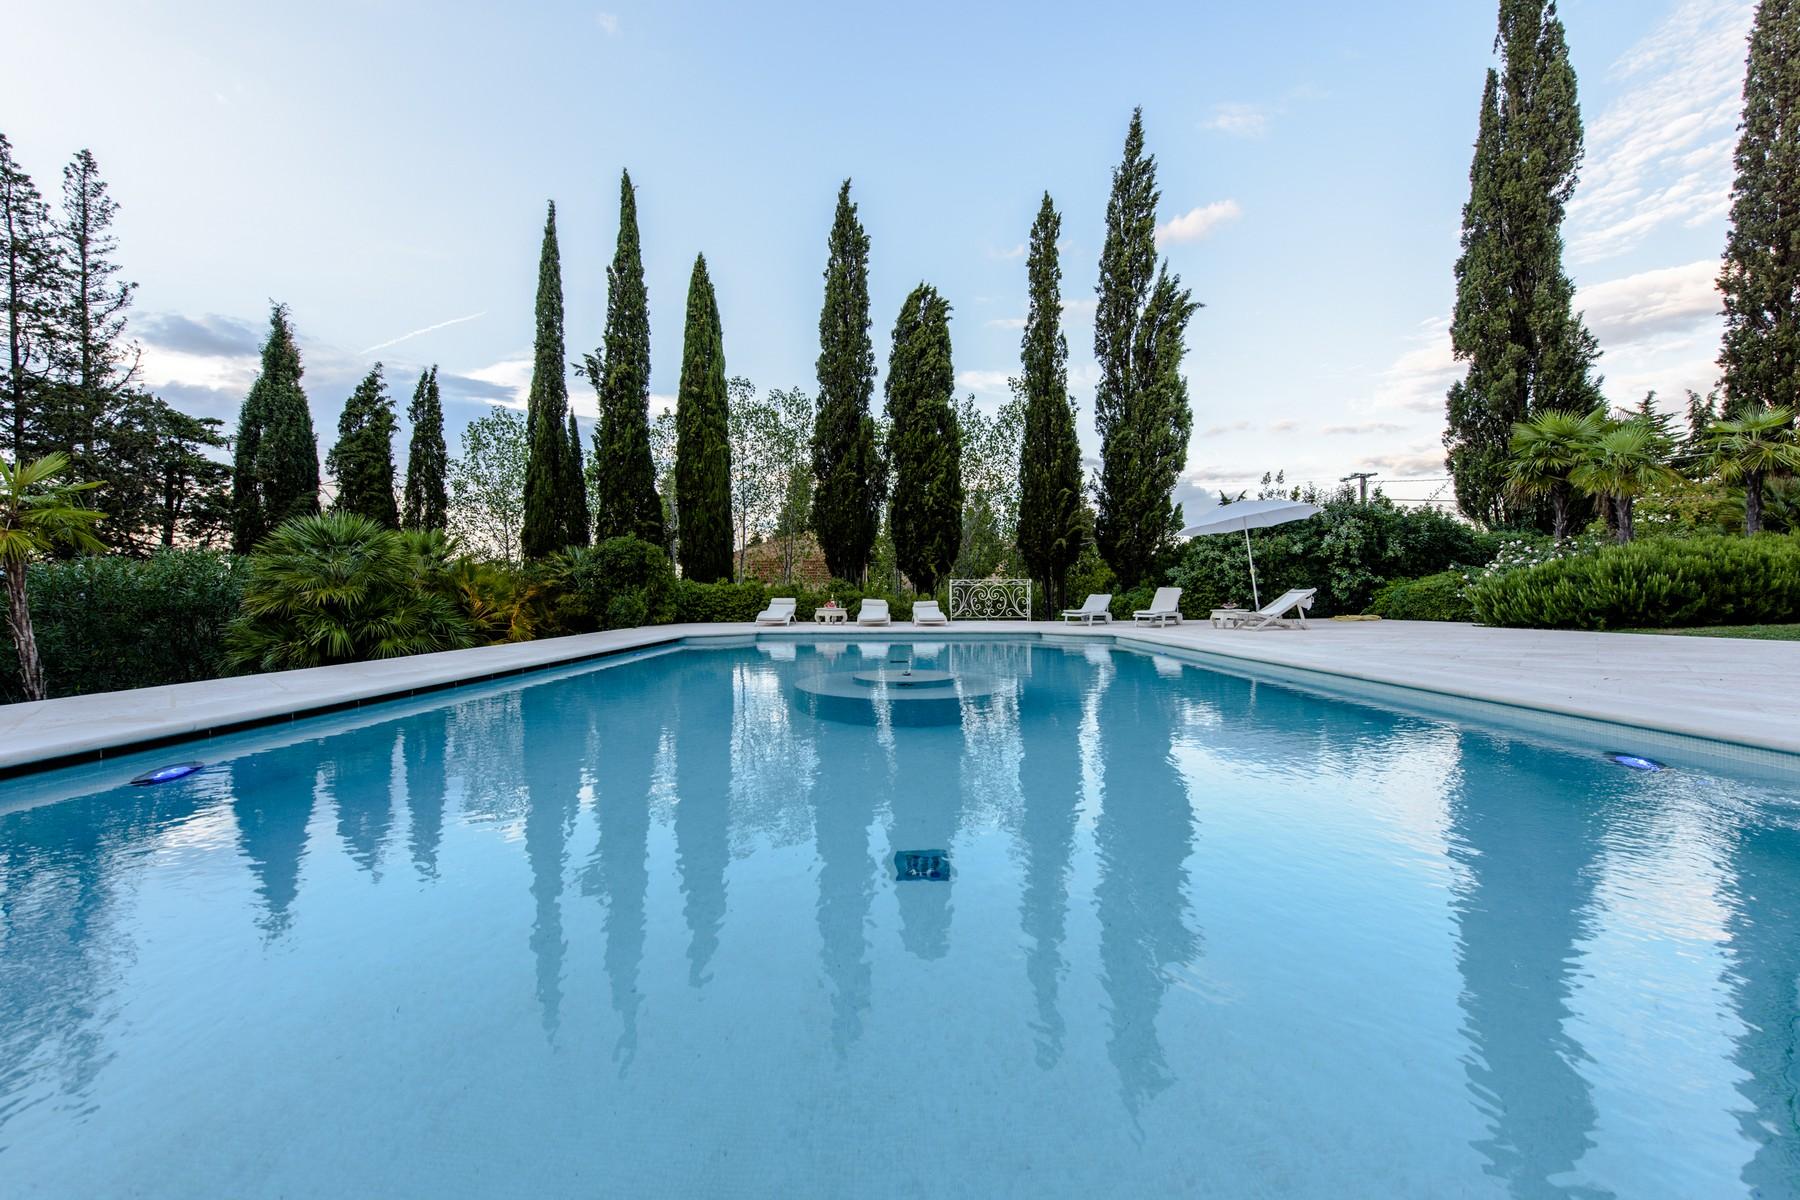 Превосходная флорентийская вилла с бассейном и парком на холмах Кьянти, Италия - 14